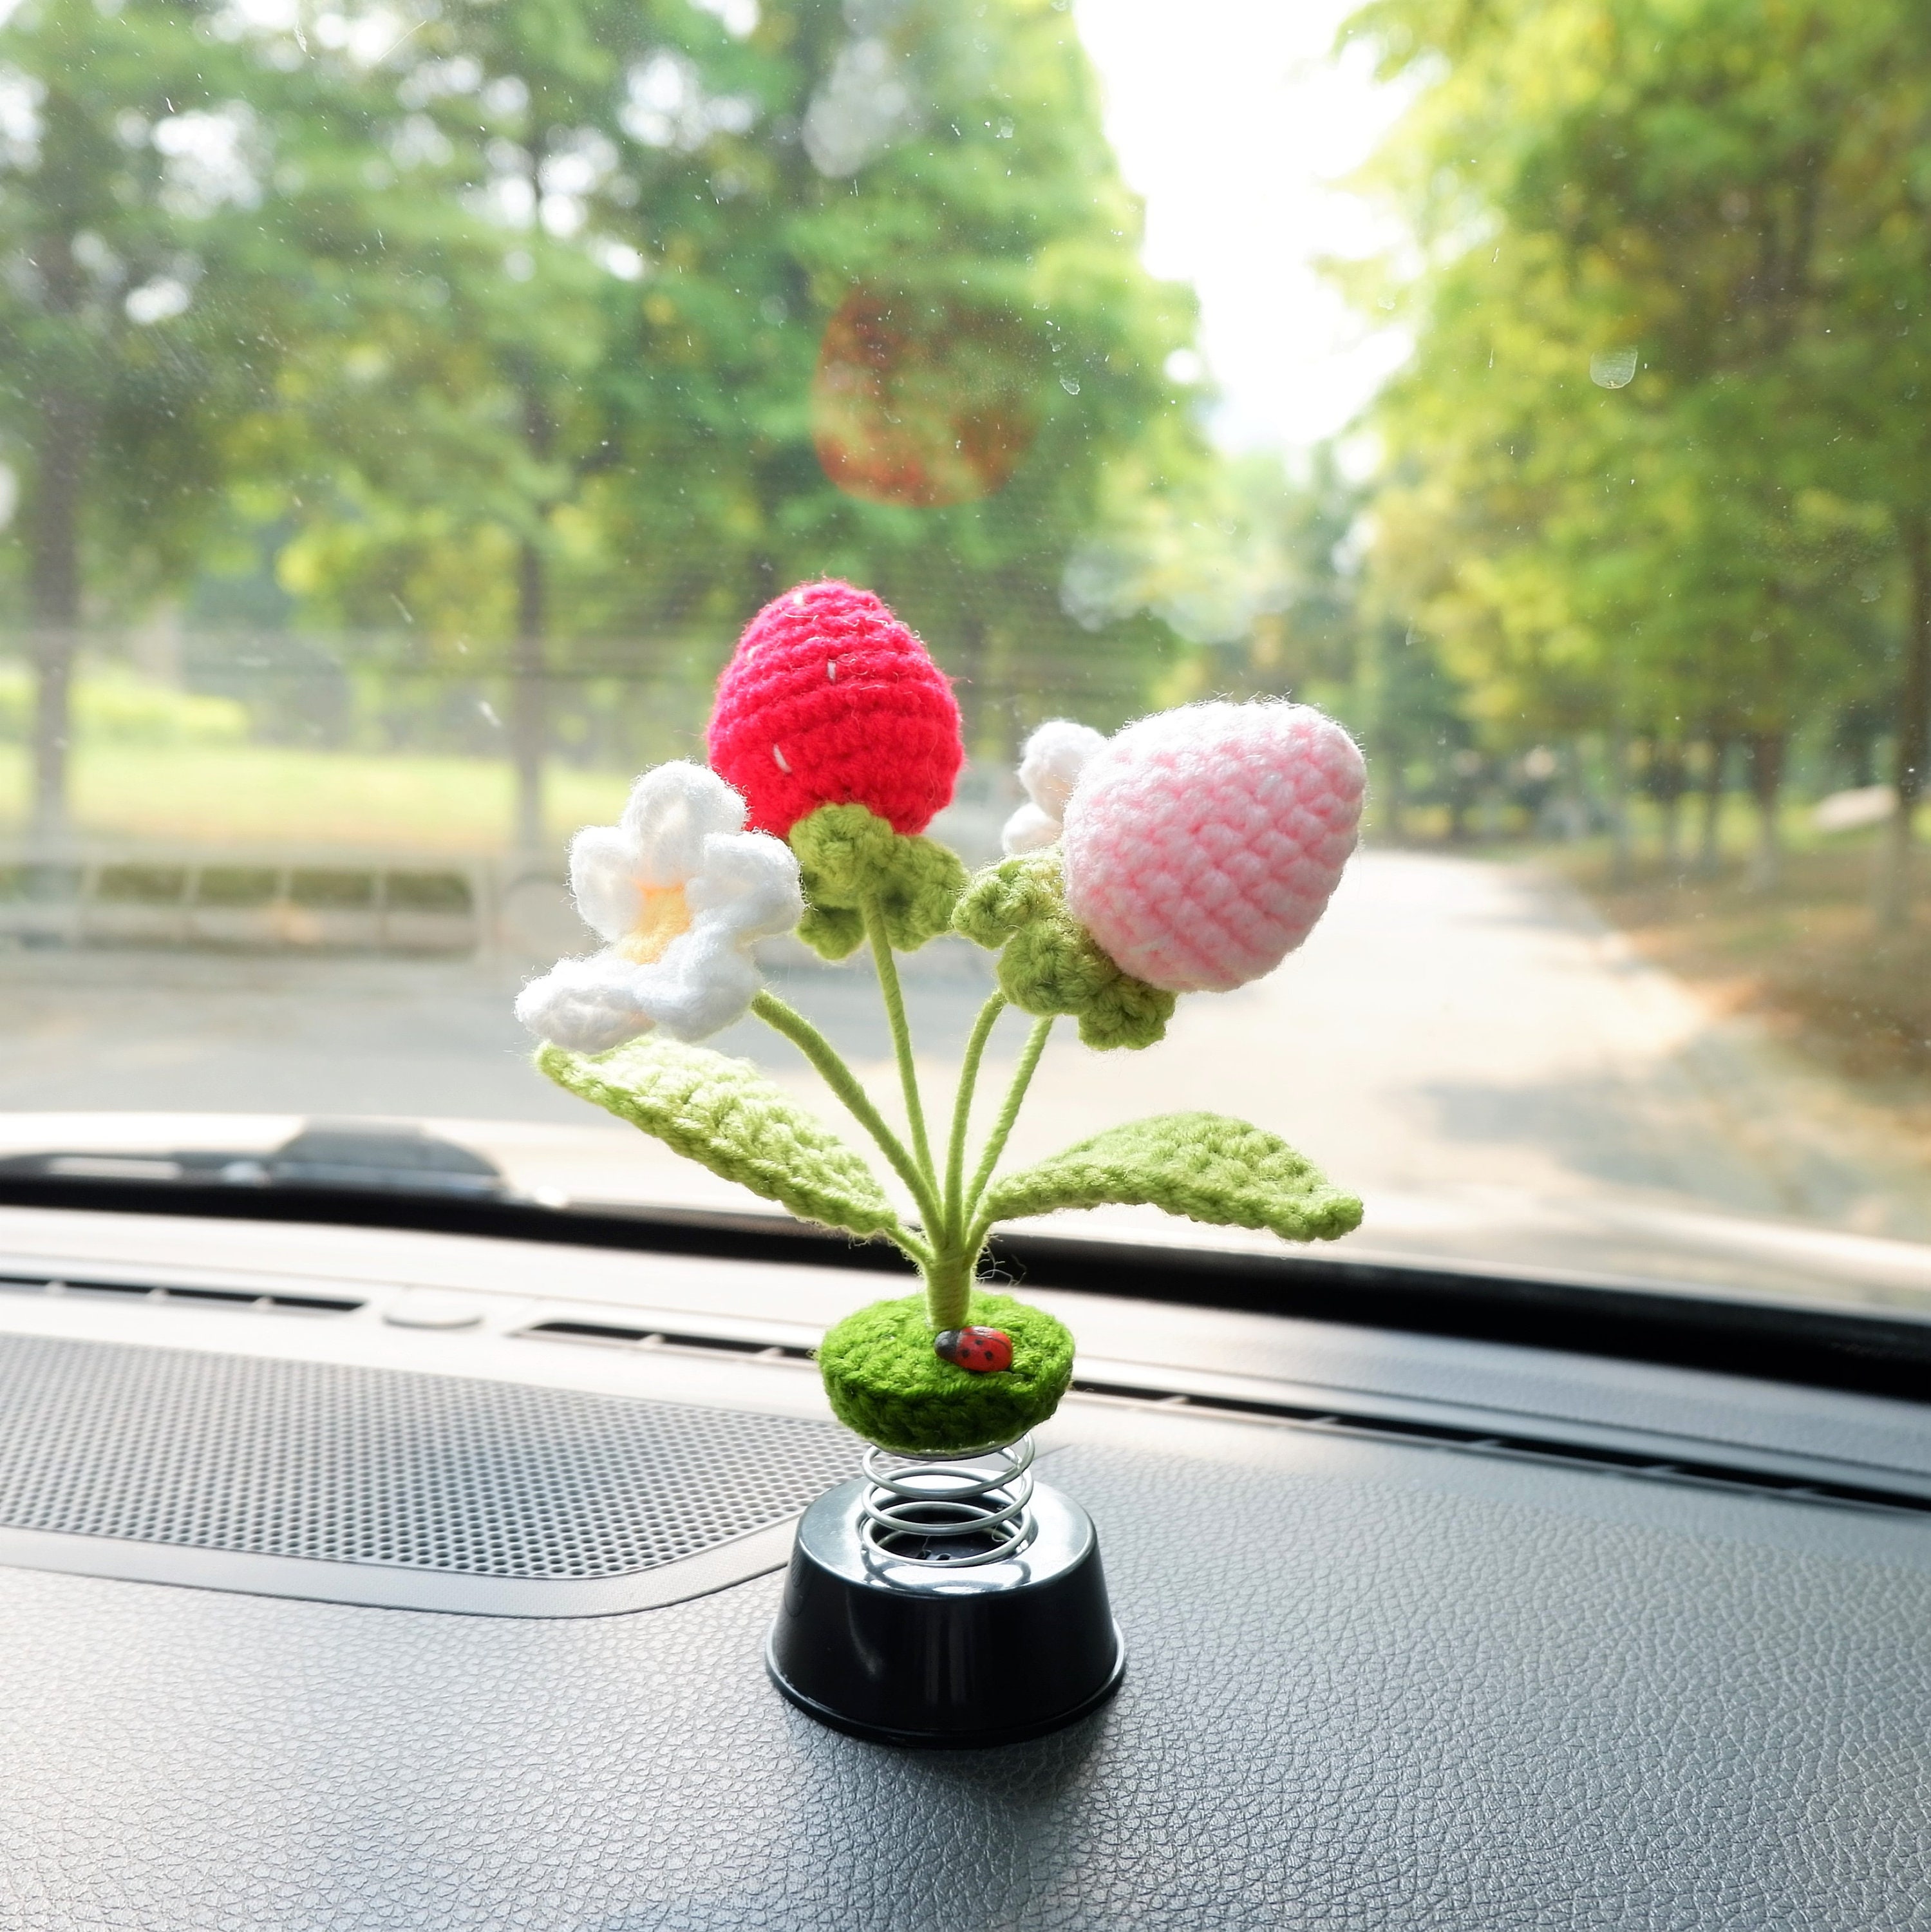 Crochet Pea Shooter Bobblehead Car Accessories, Car Plant Dashboard Decor,  Cute Car Interior Accessory for Women/teens, Car Air Freshener -   Finland